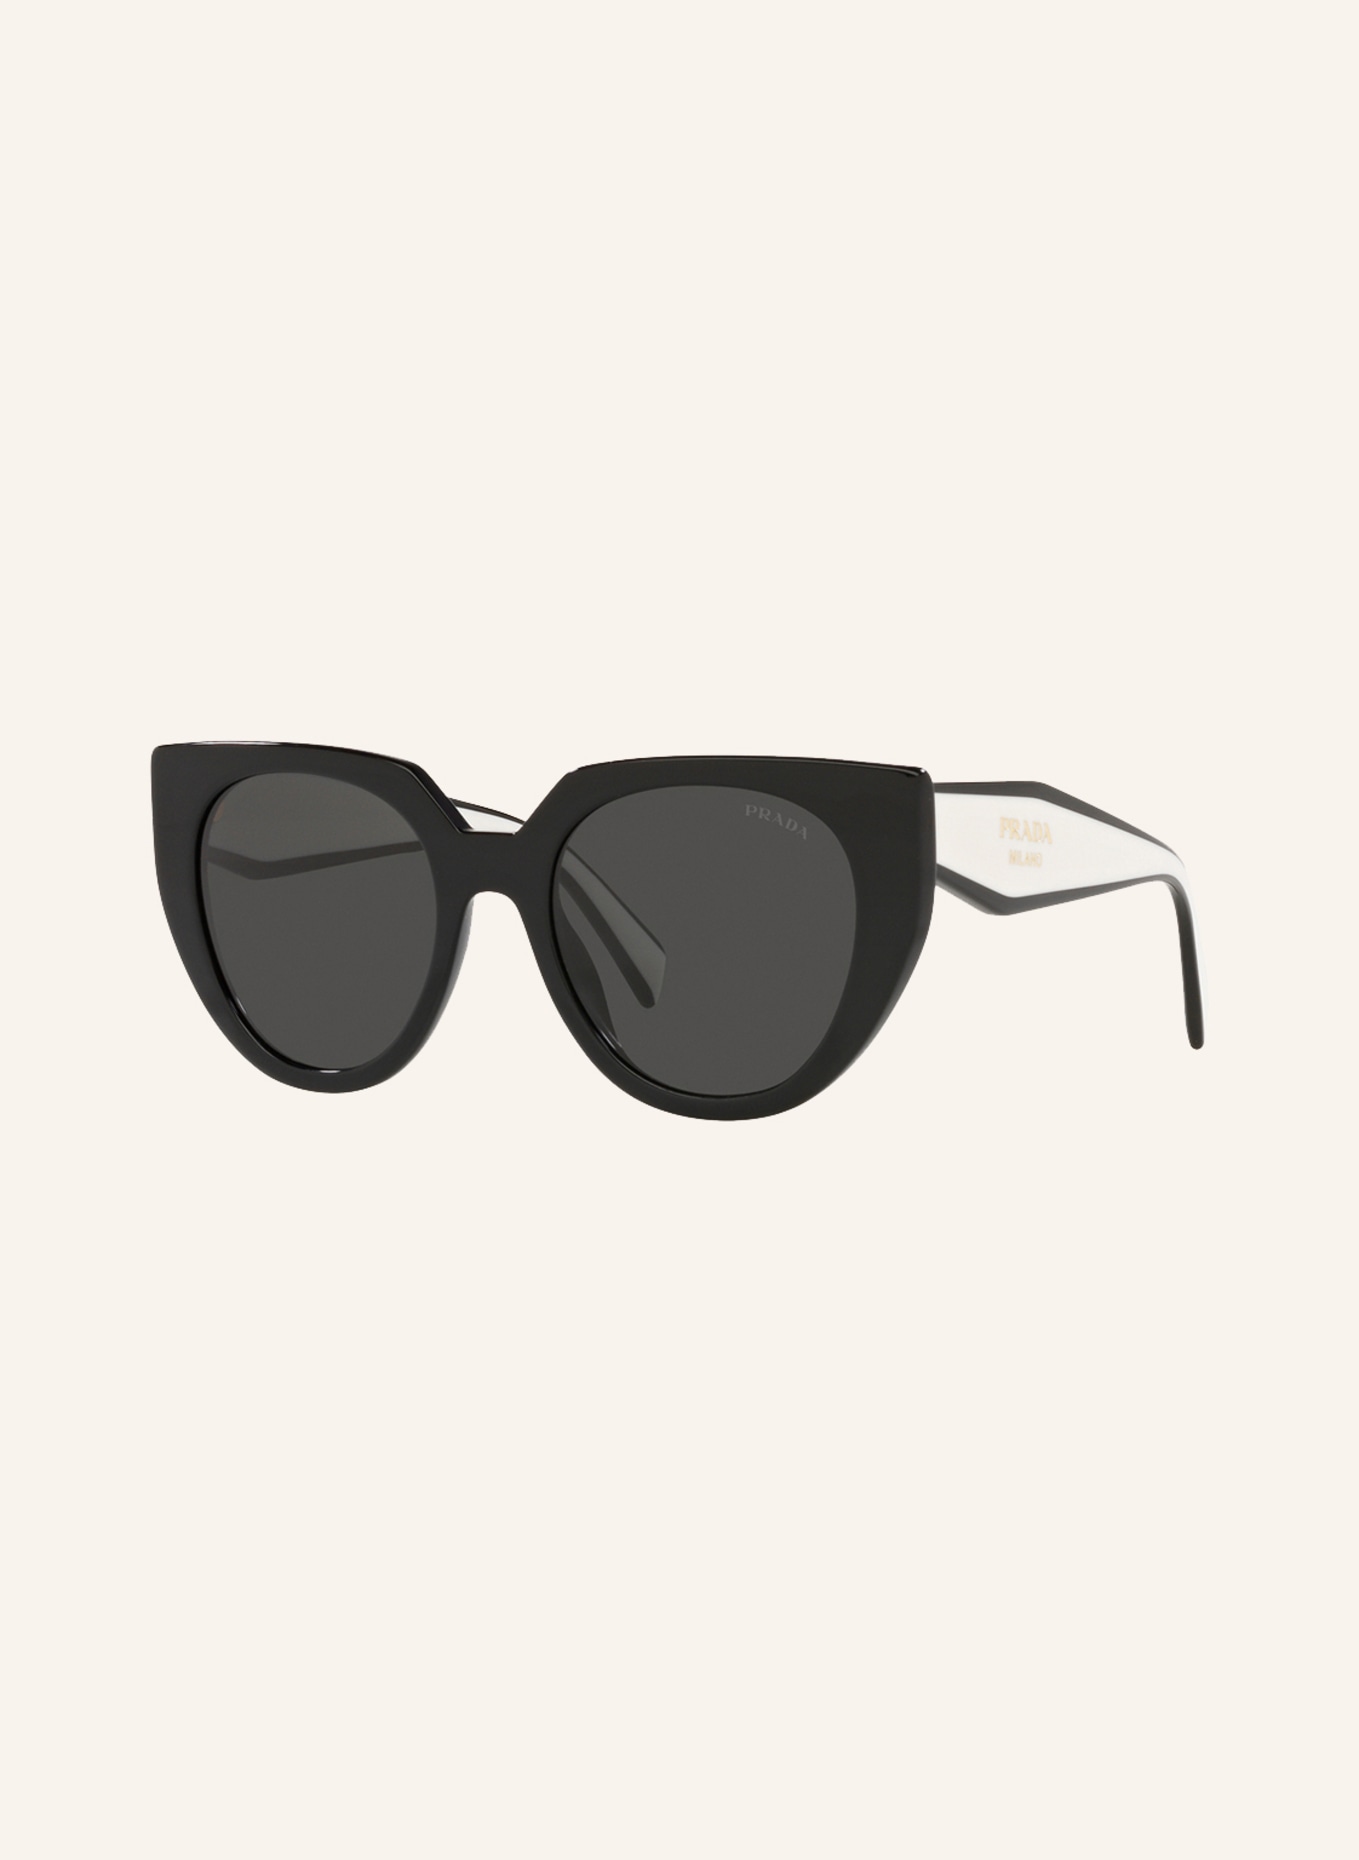 PRADA Sunglasses PR14WS, Color: BLACK/GRAY (Image 1)